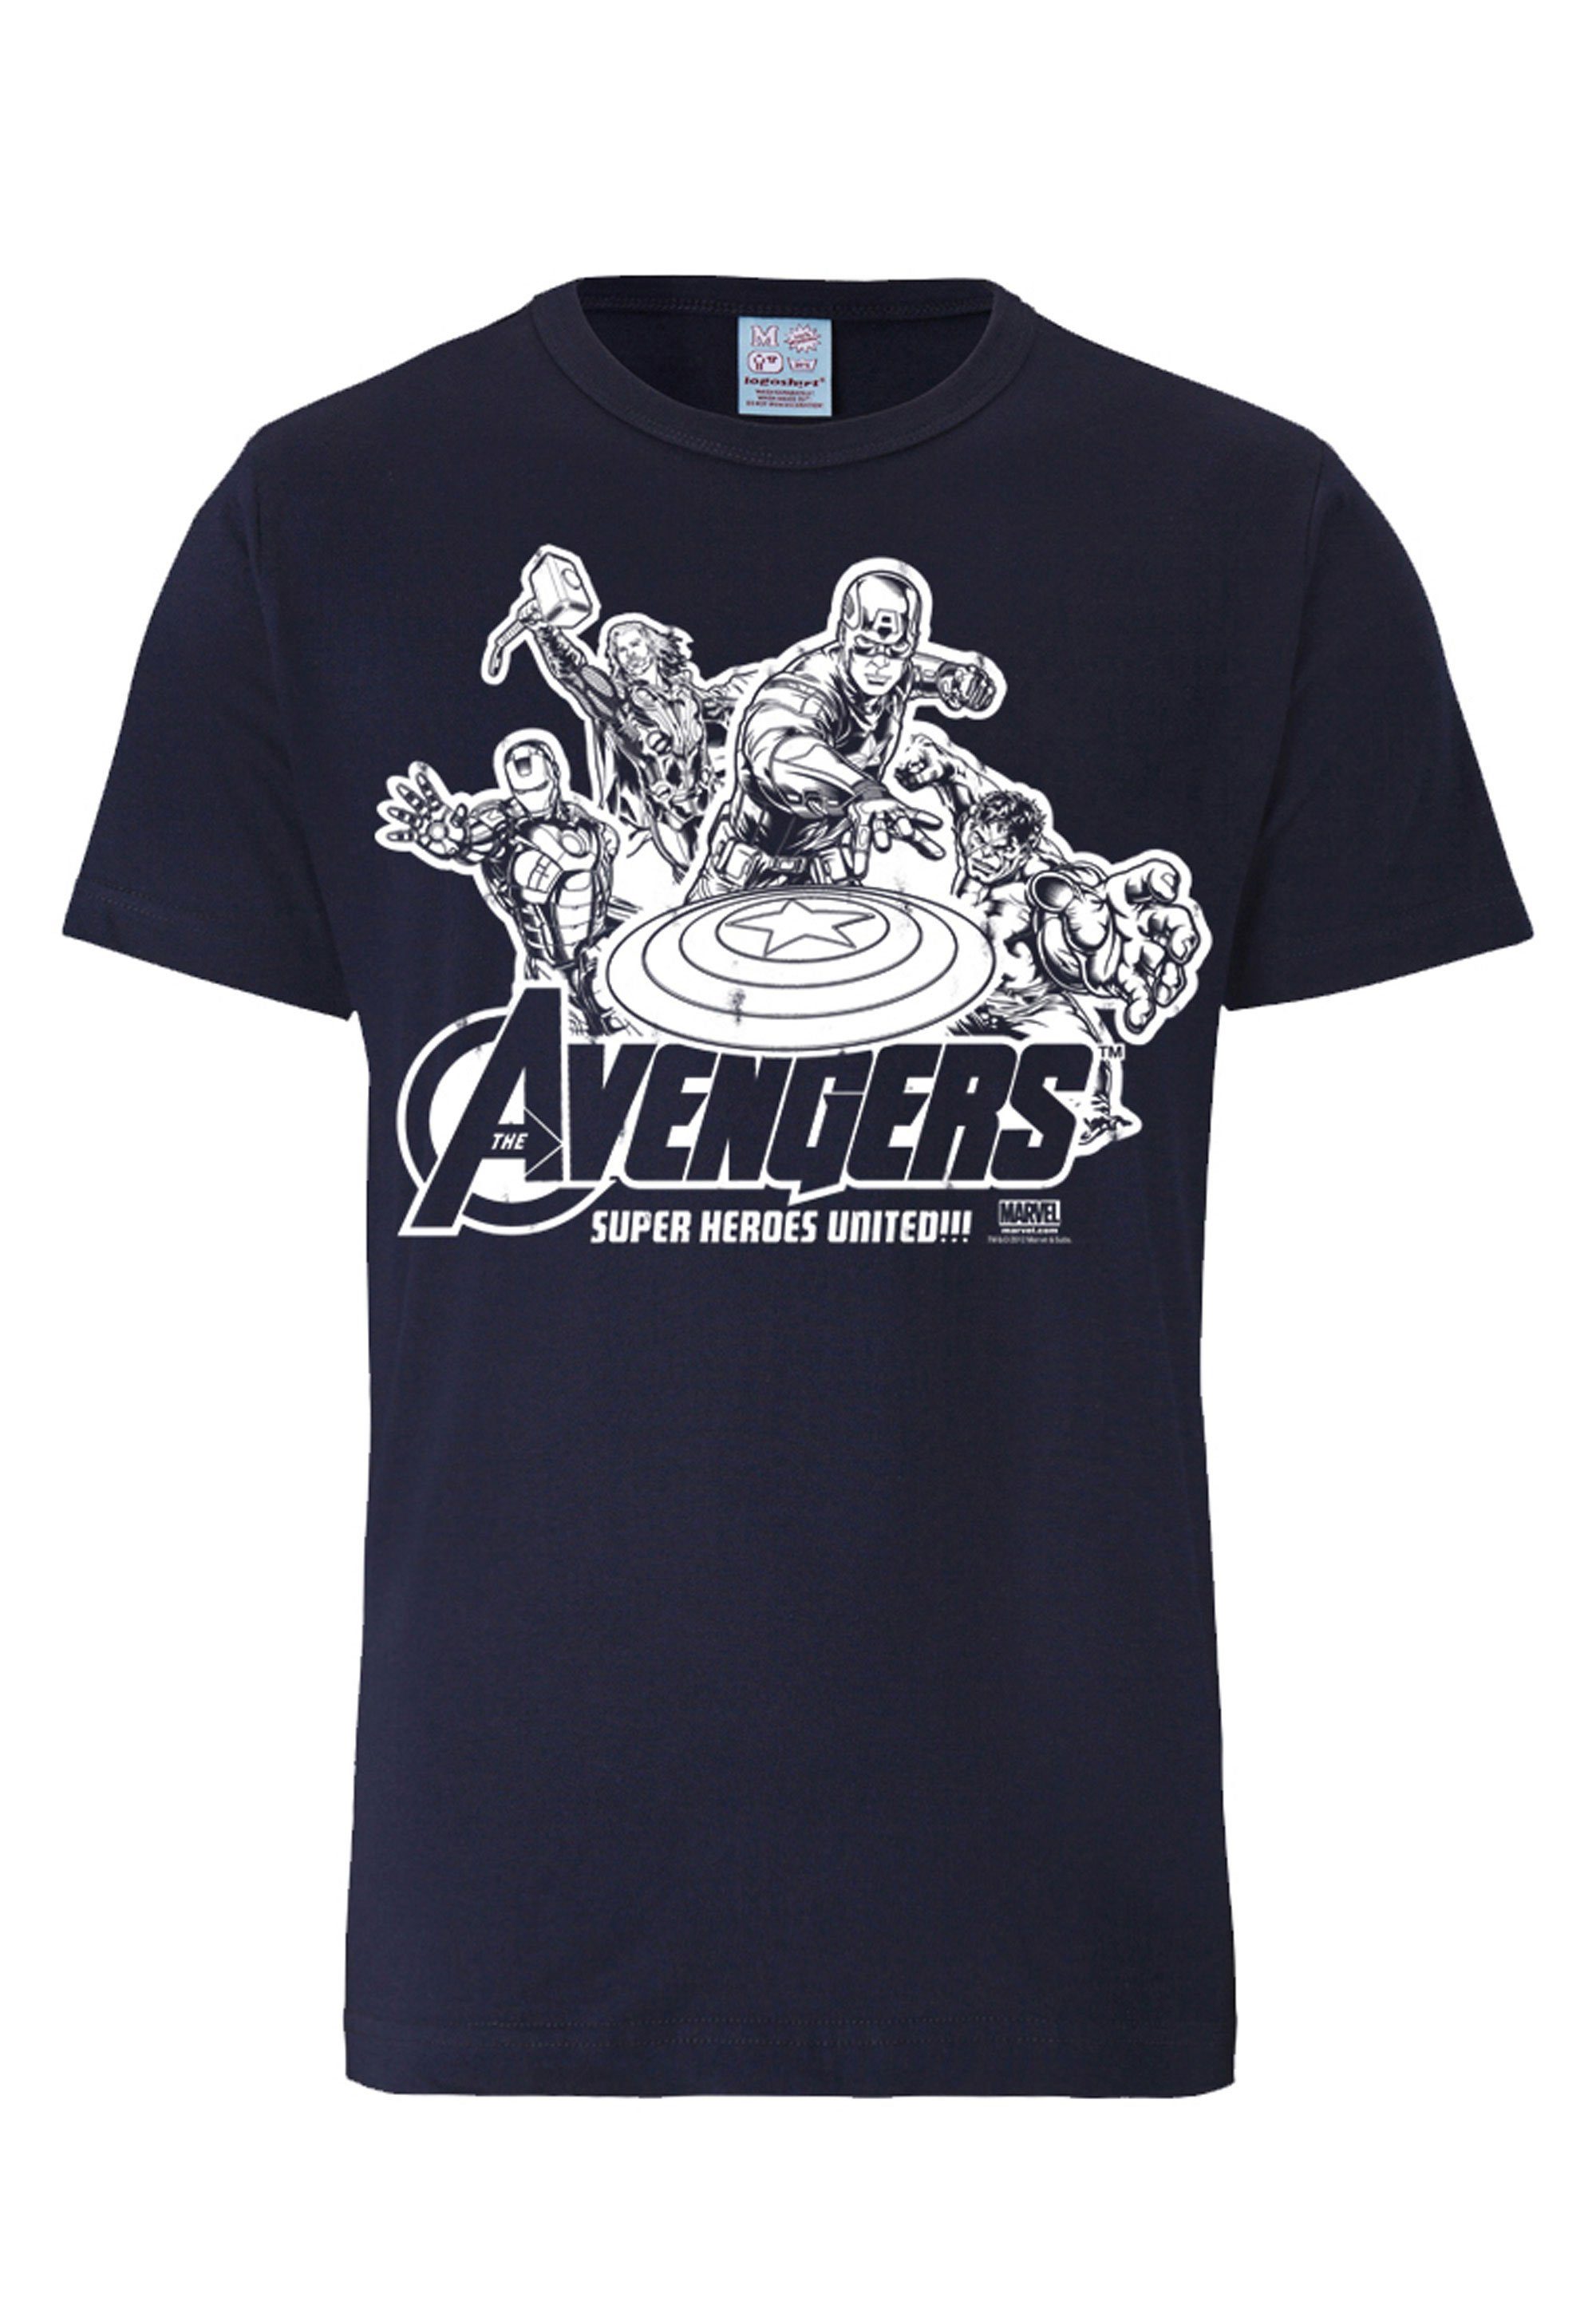 Damen Shirts LOGOSHIRT T-Shirt Marvel Comics - Avengers mit lizenziertem Print